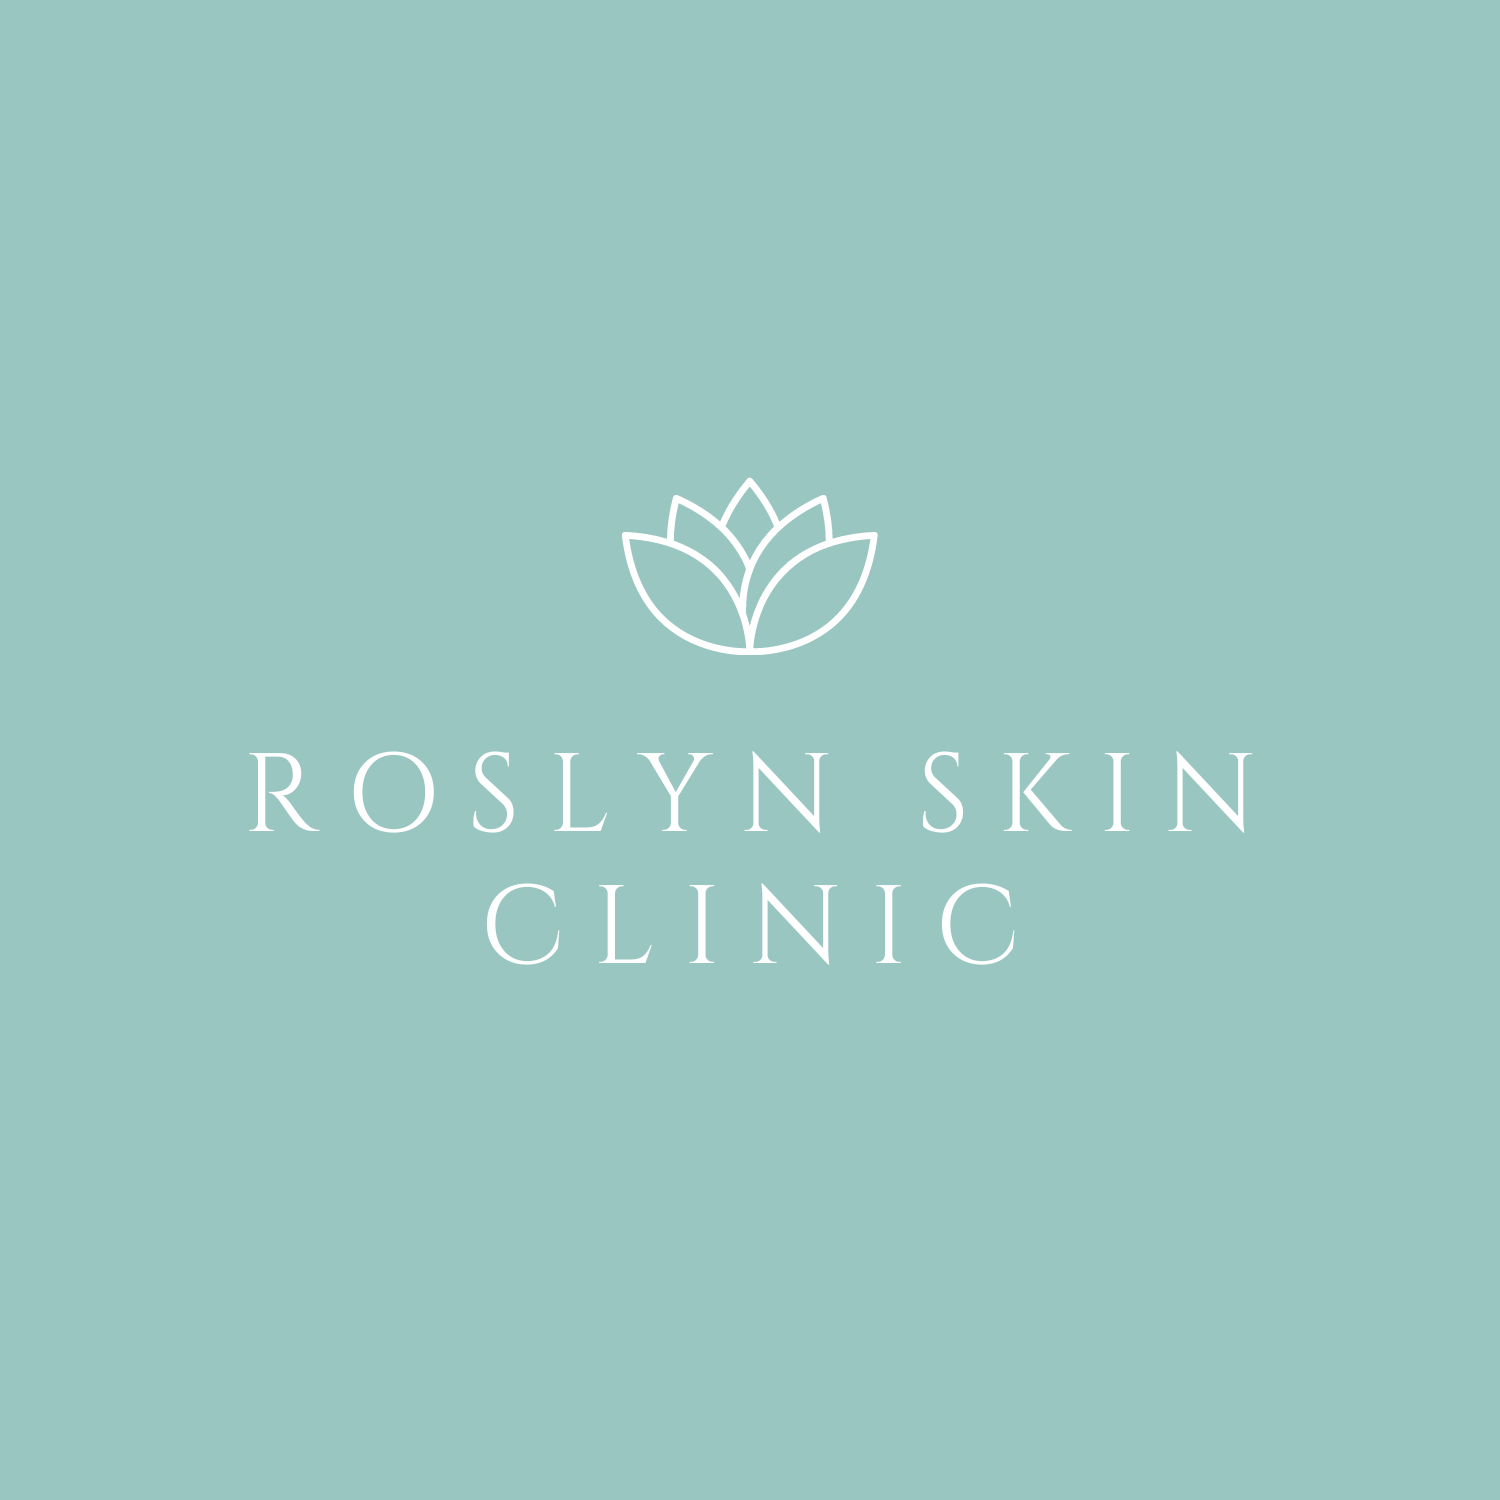 Roslyn Skin Clinic